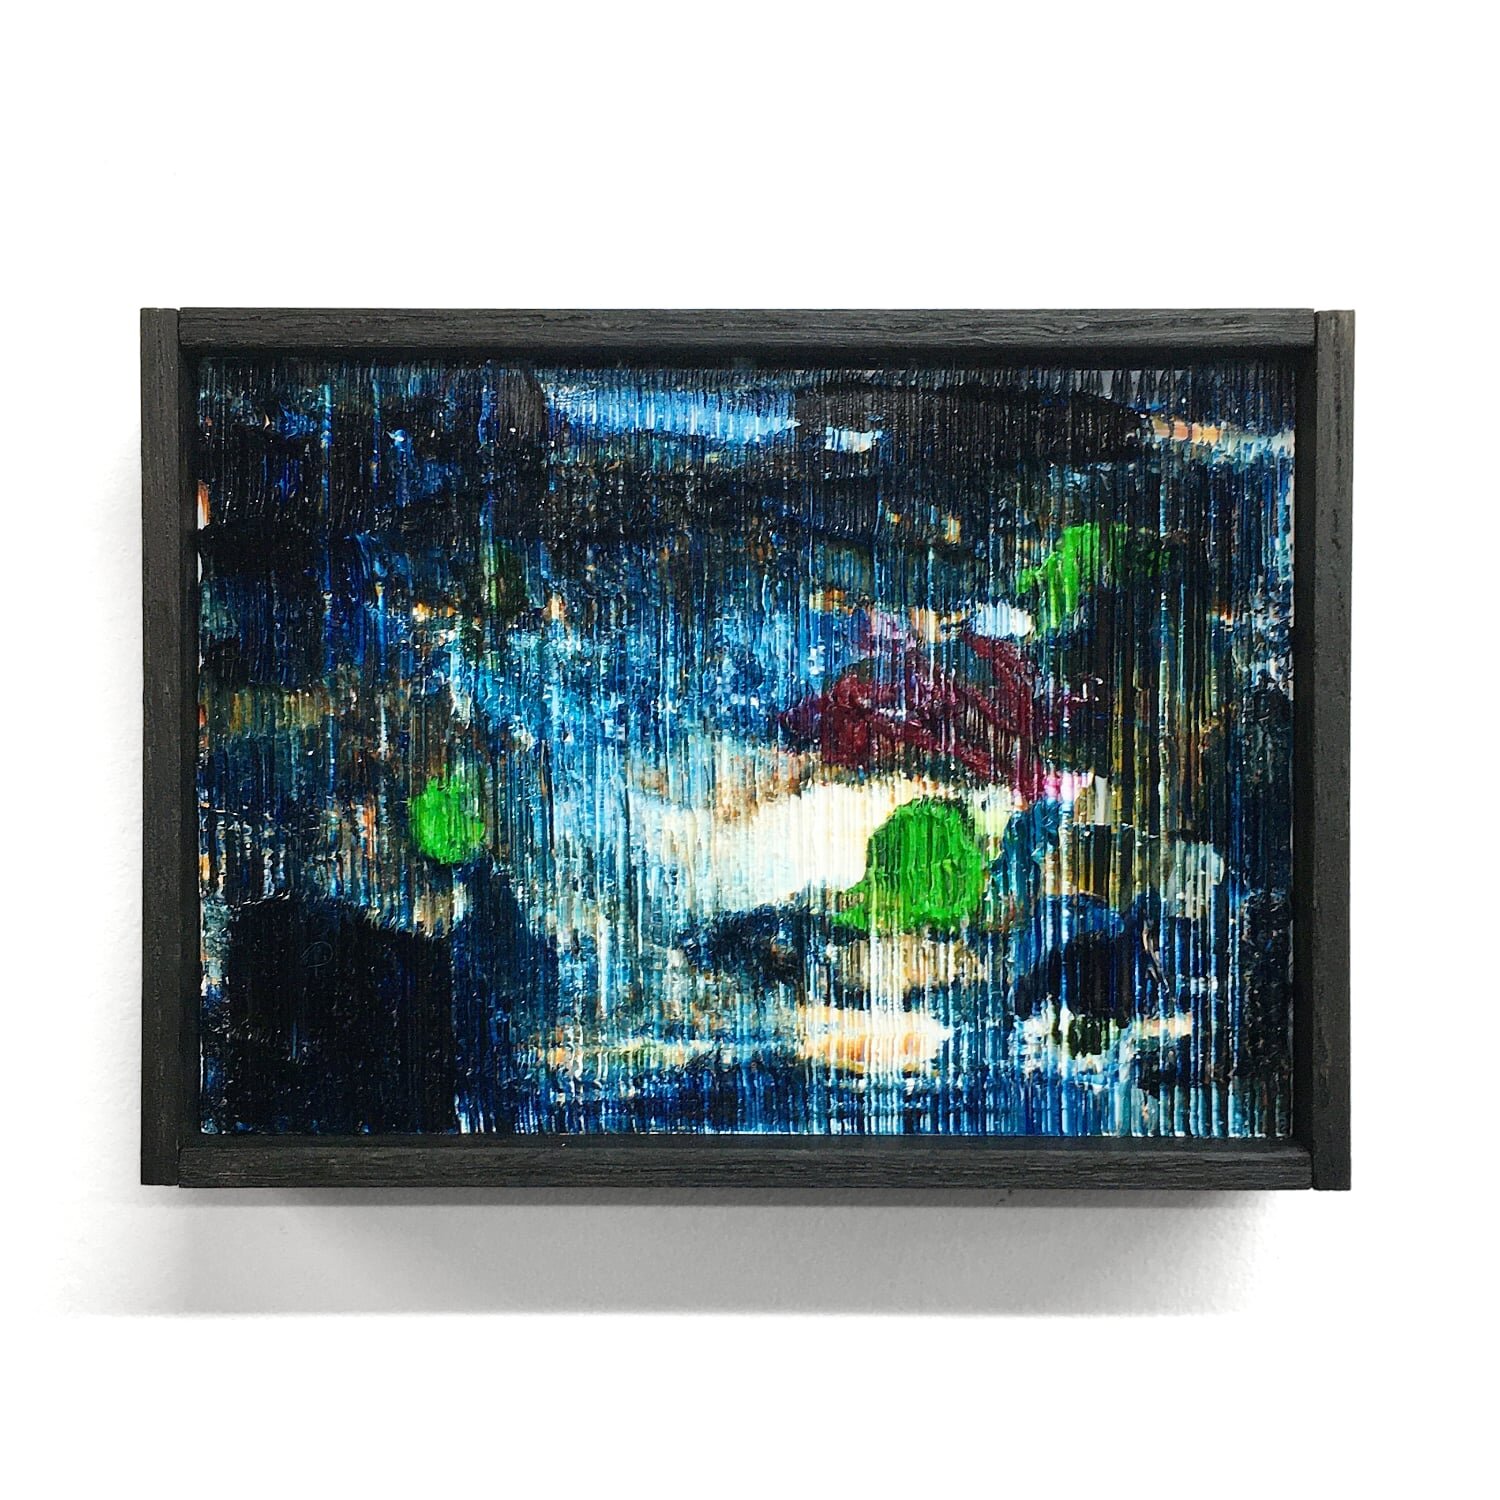 Louis-Bernard-St-Jean--Giverny--2019-oil-on-wood-5x7in--1500px_sqr.jpg